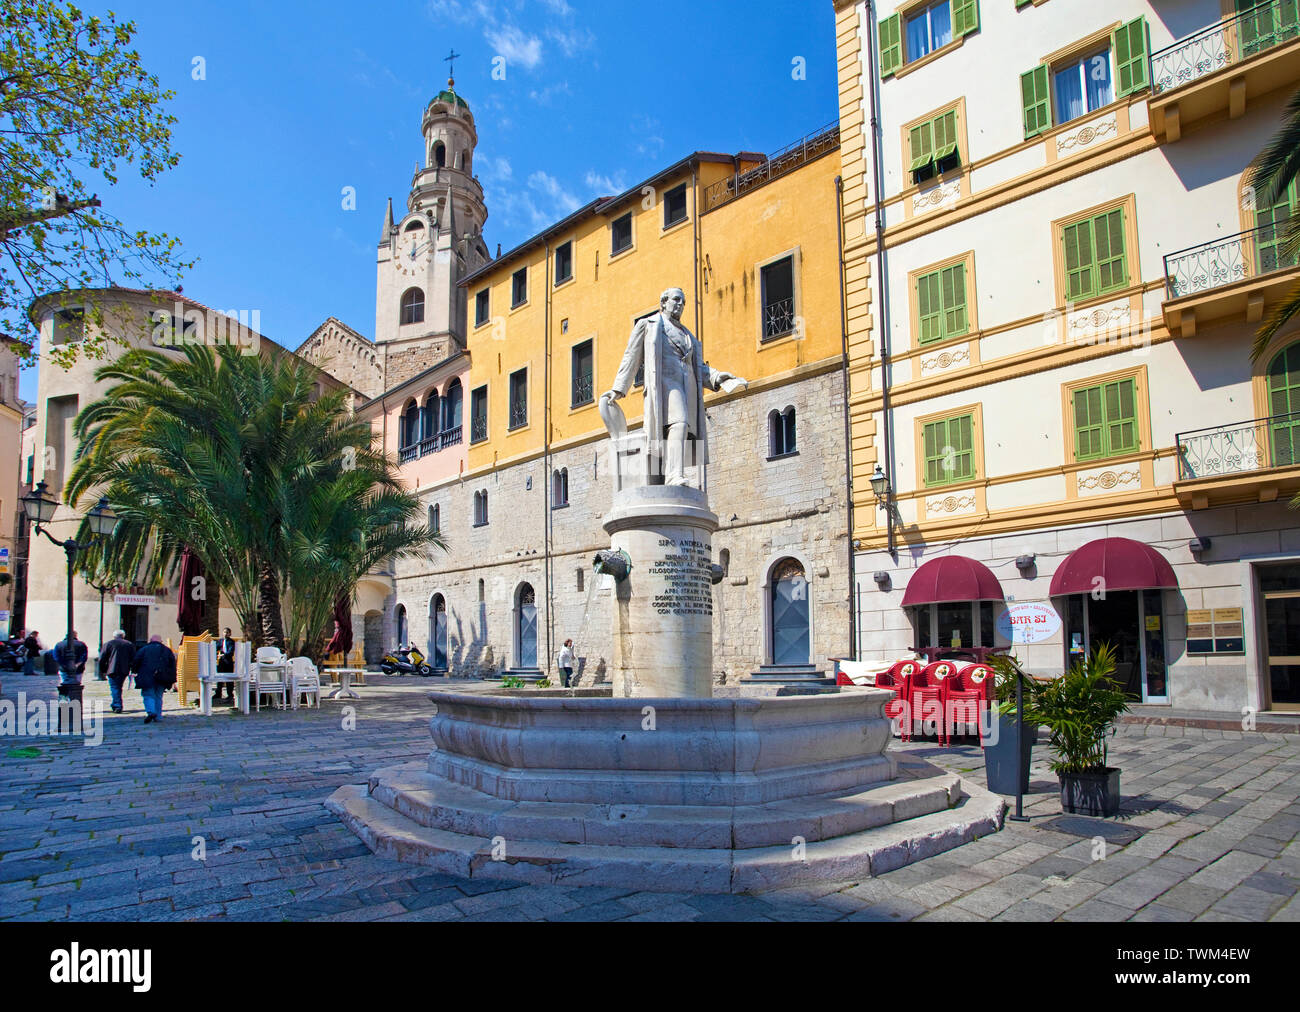 Bene in onore di Siro Andrea Carli, dietro il San Siro cattedrale, il centro storico La Pigna, la città vecchia di San Remo, Liguria, Italia Foto Stock